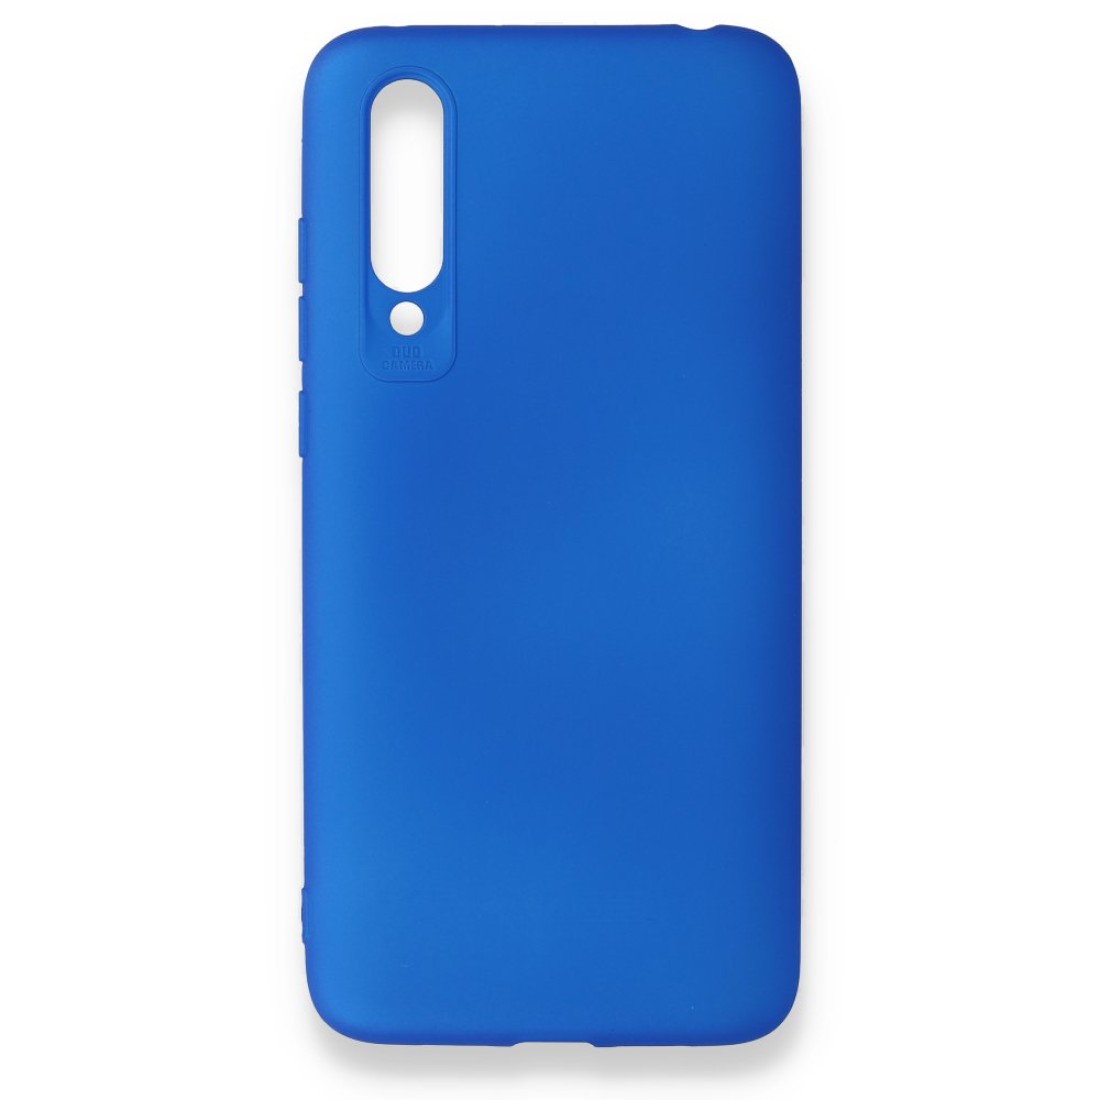 Xiaomi Mi 9 Lite Kılıf Premium Rubber Silikon - Mavi